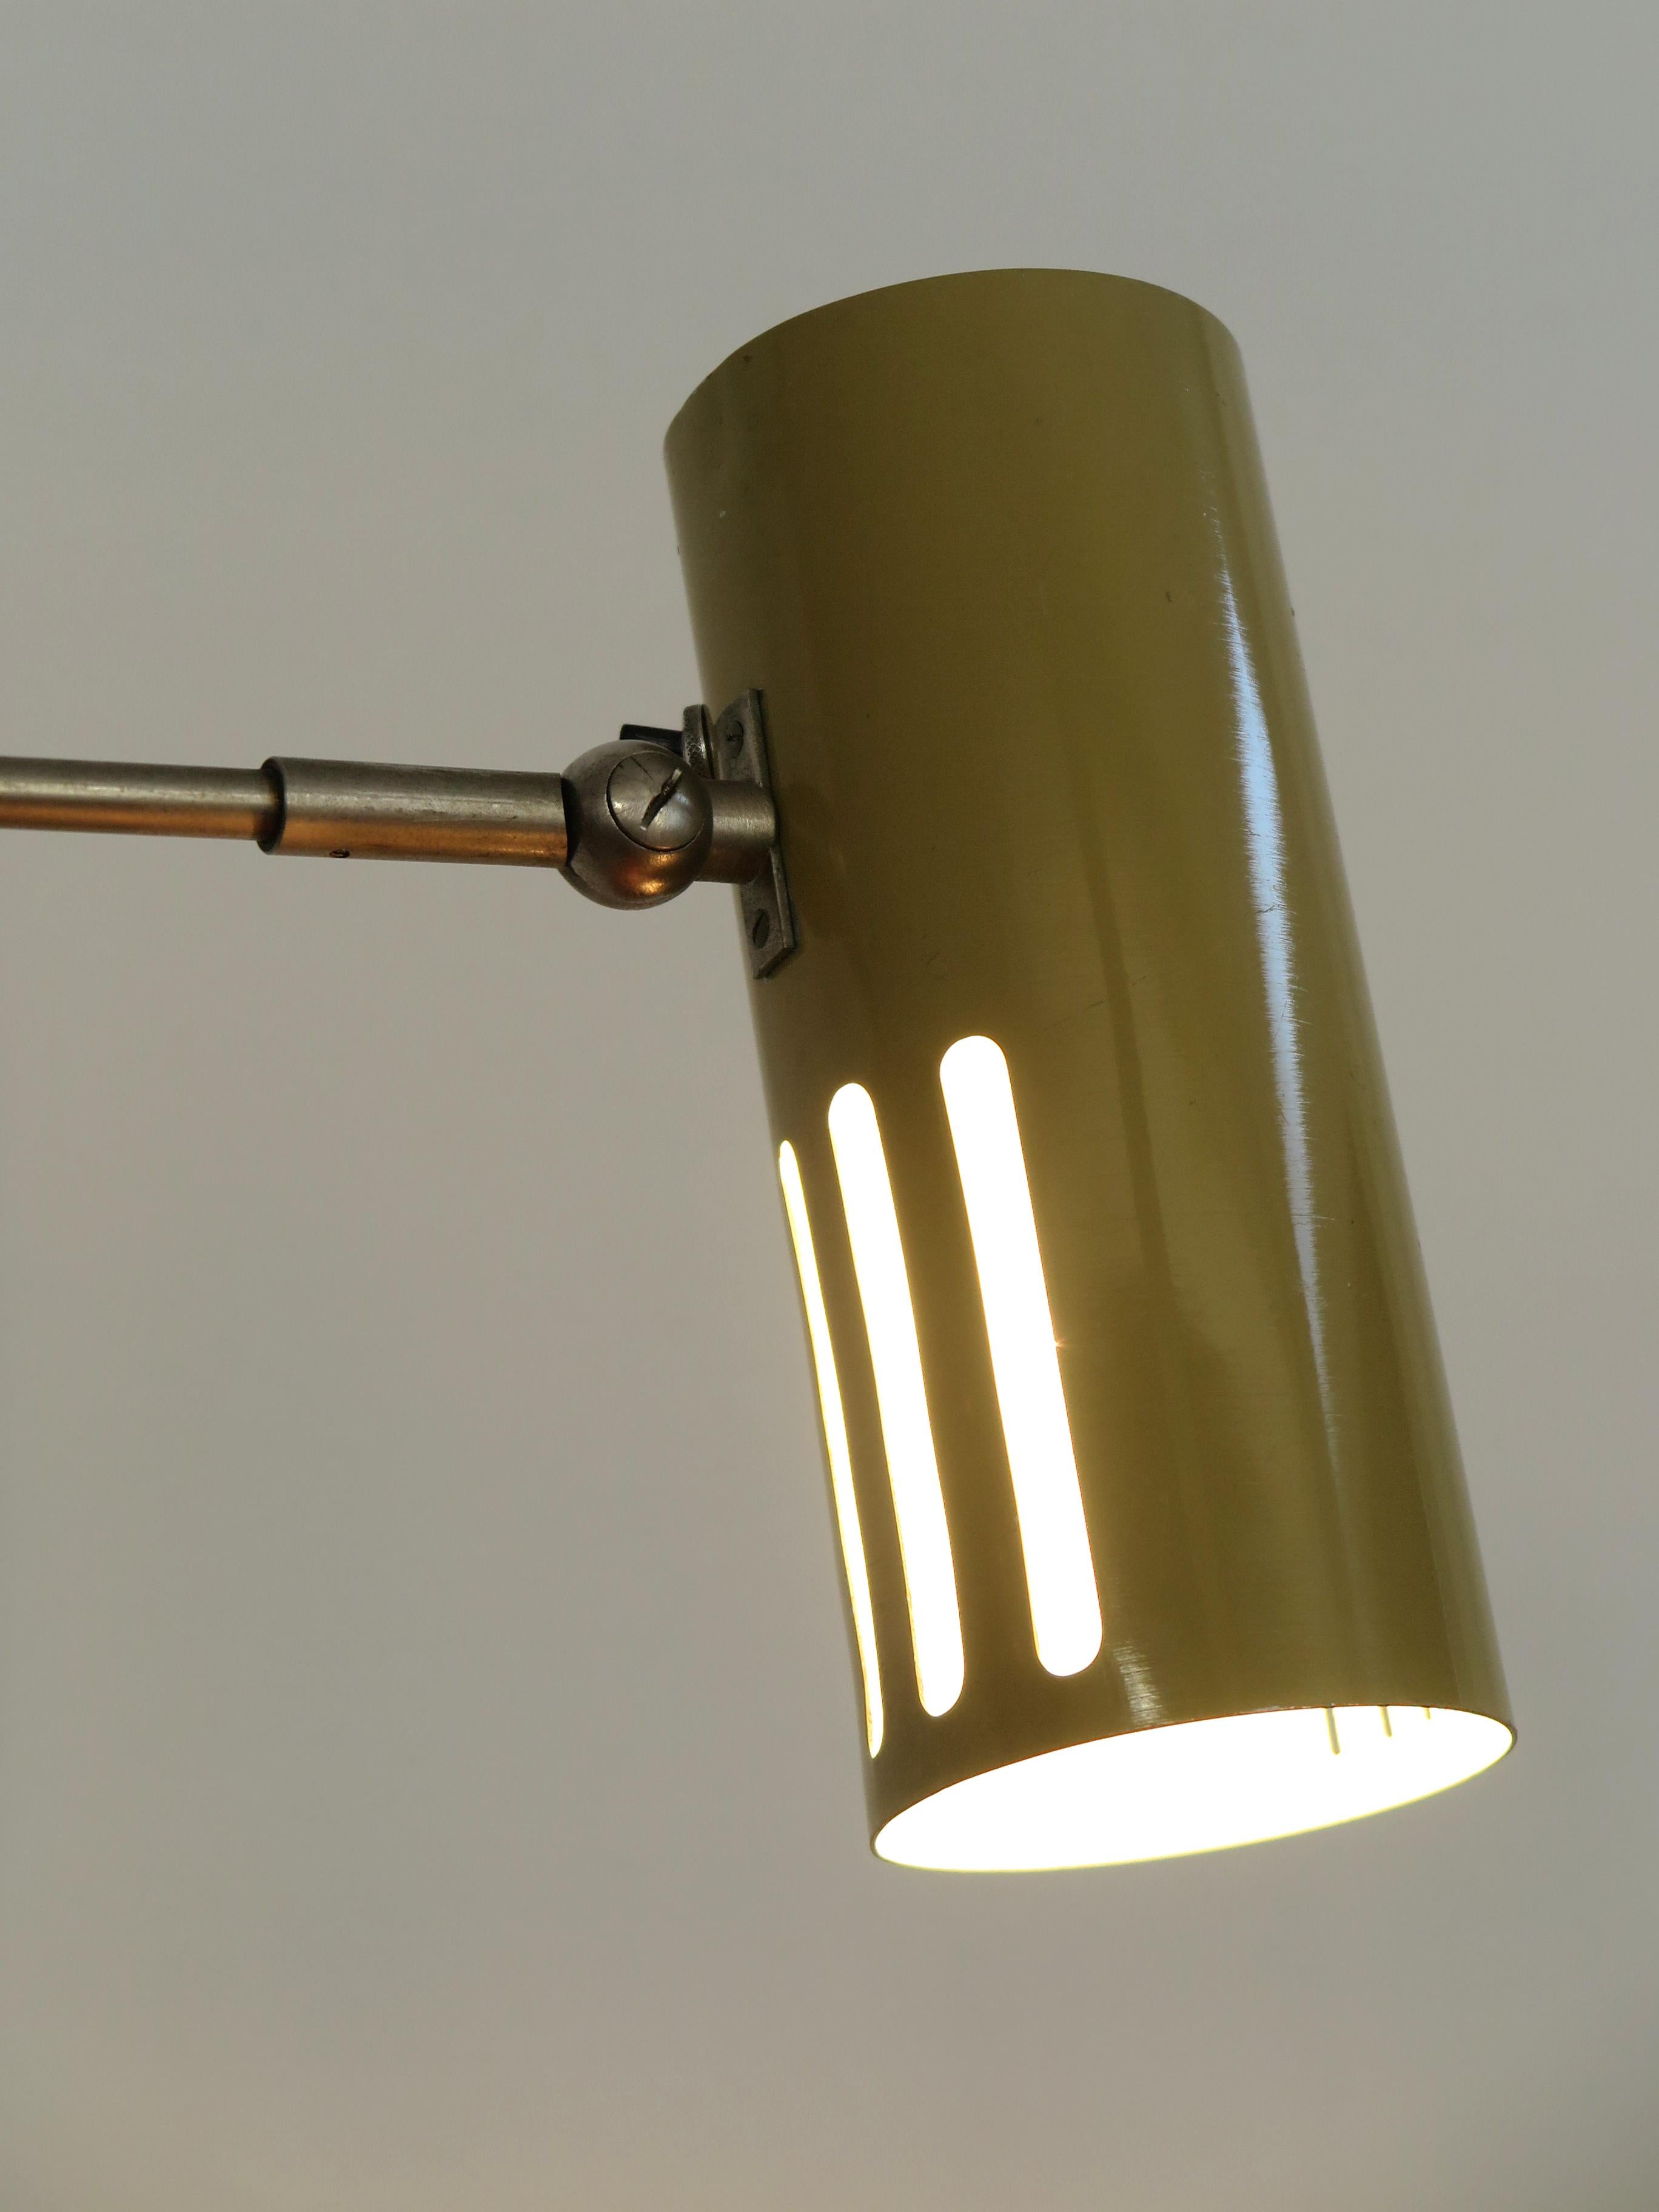 Italian Stilnovo Midcentury Modern Metal Clamp Table Lamp 1950s For Sale 2